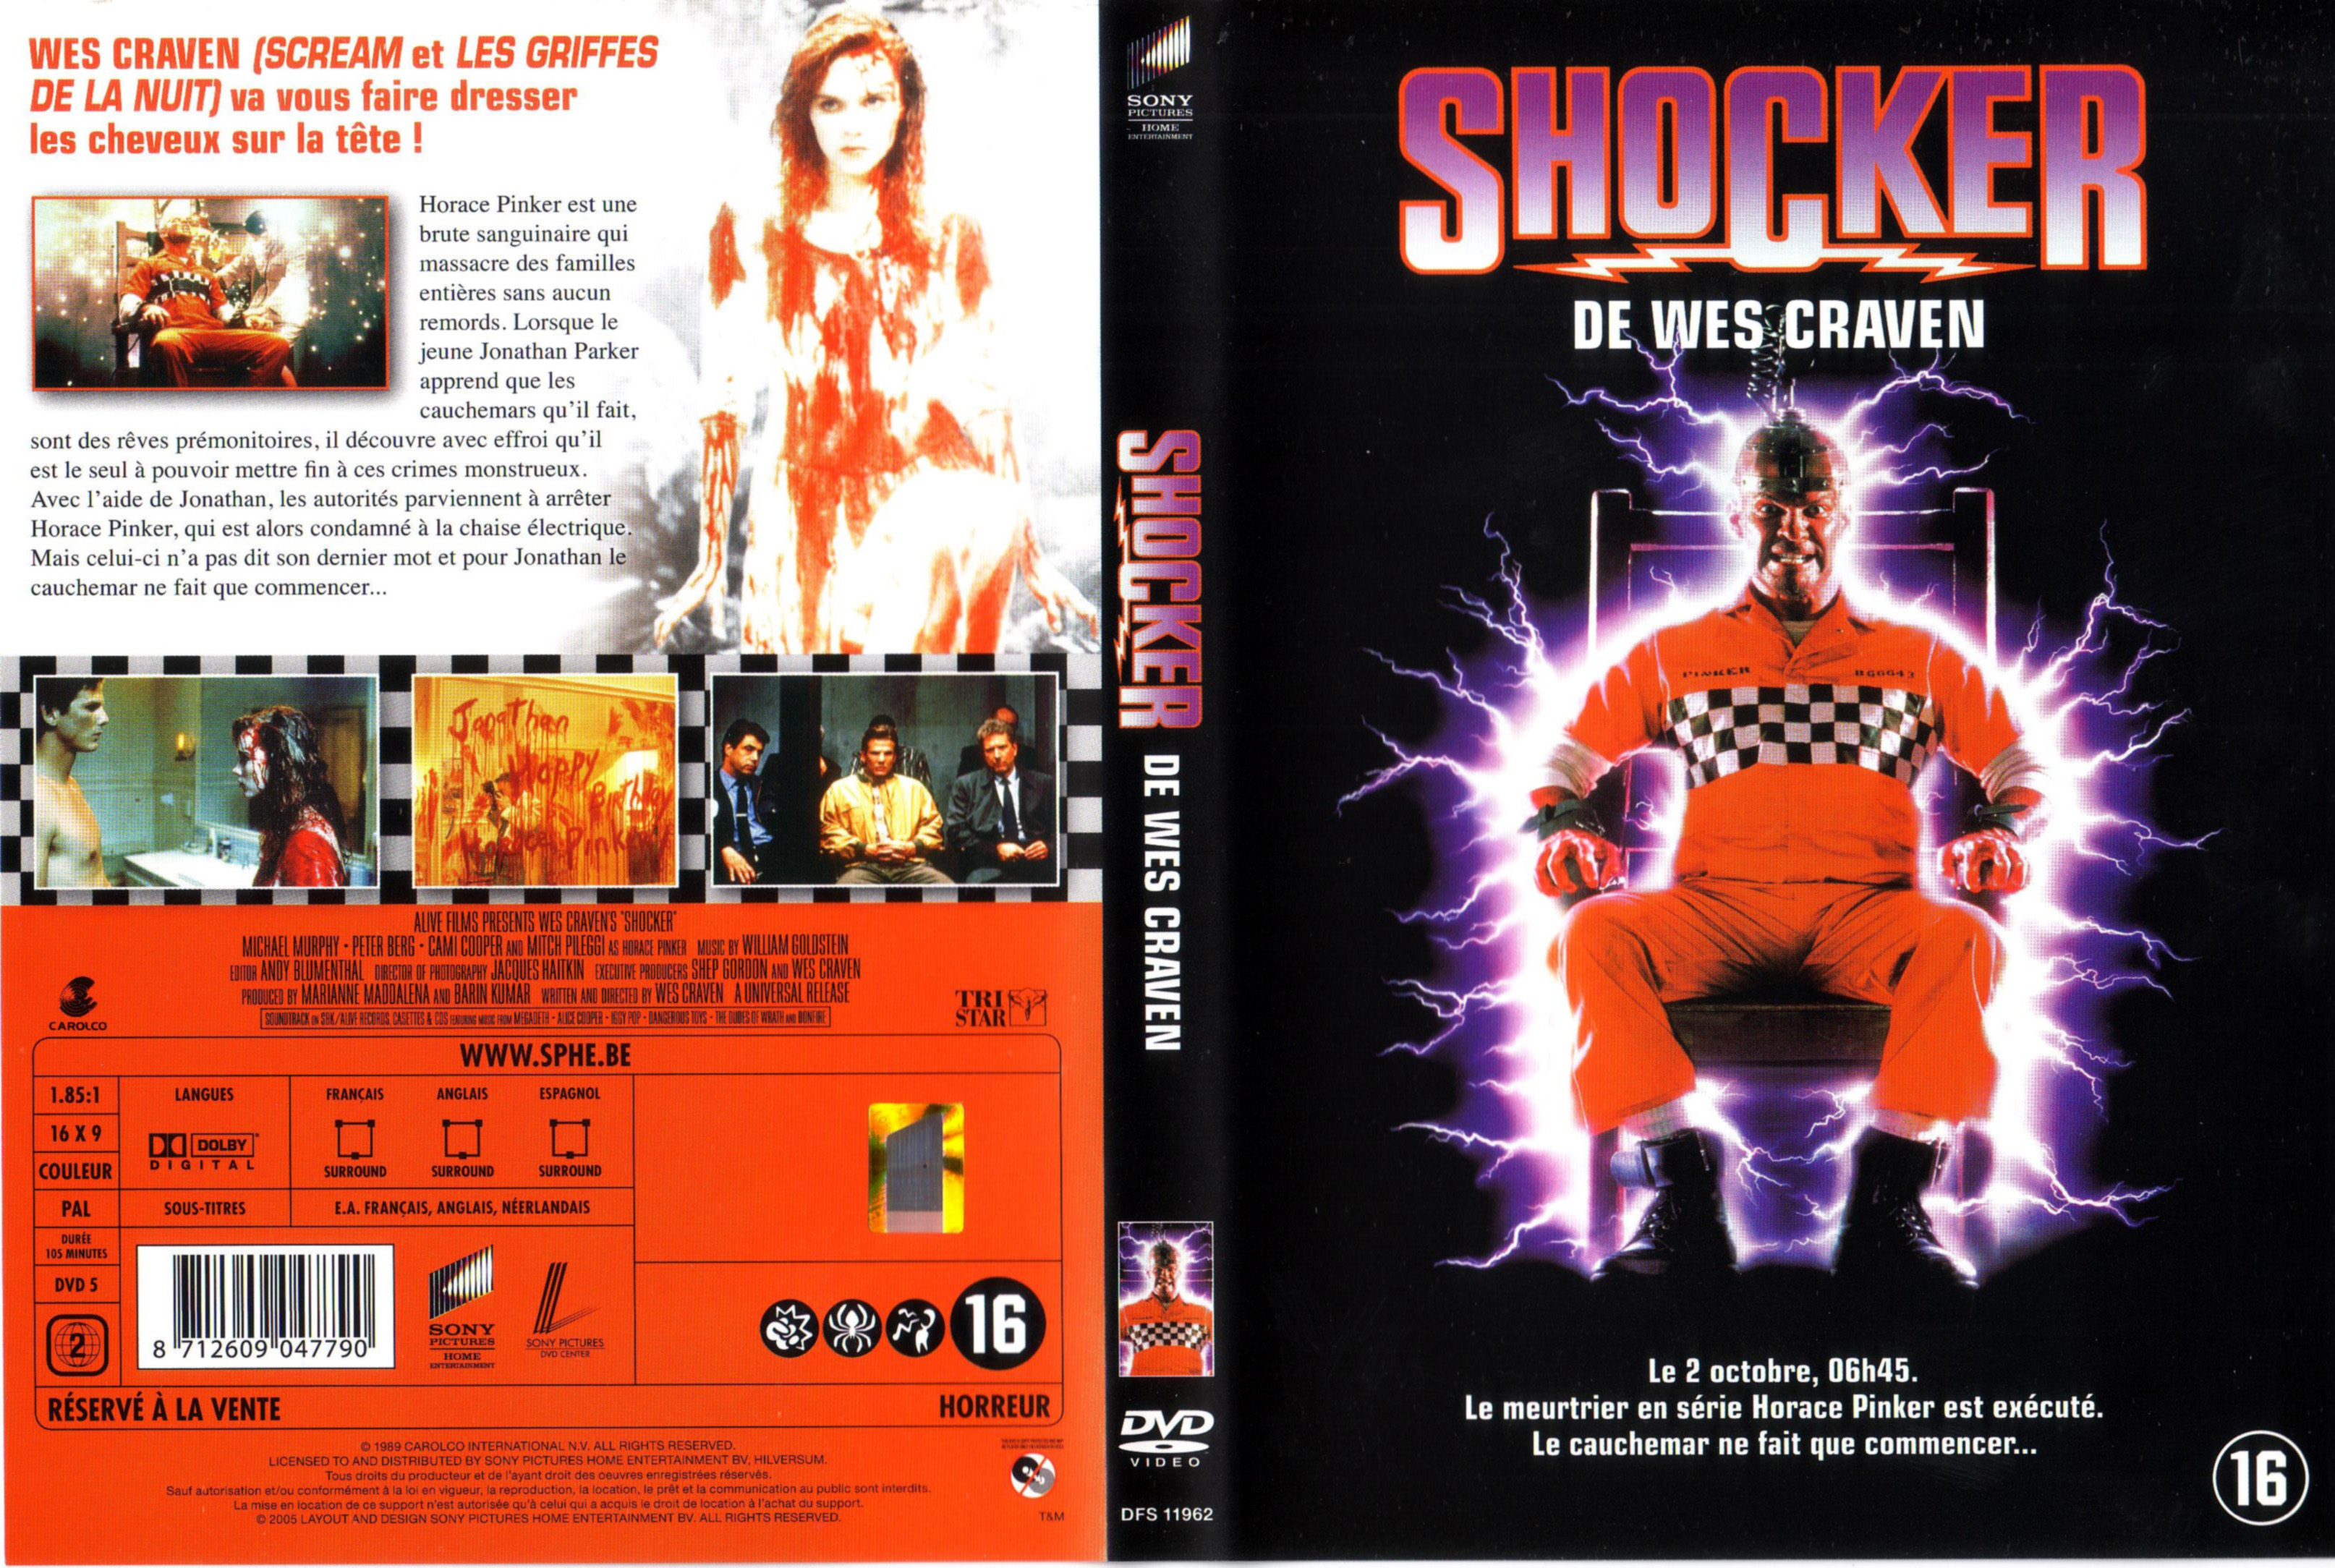 Jaquette DVD Shocker v2